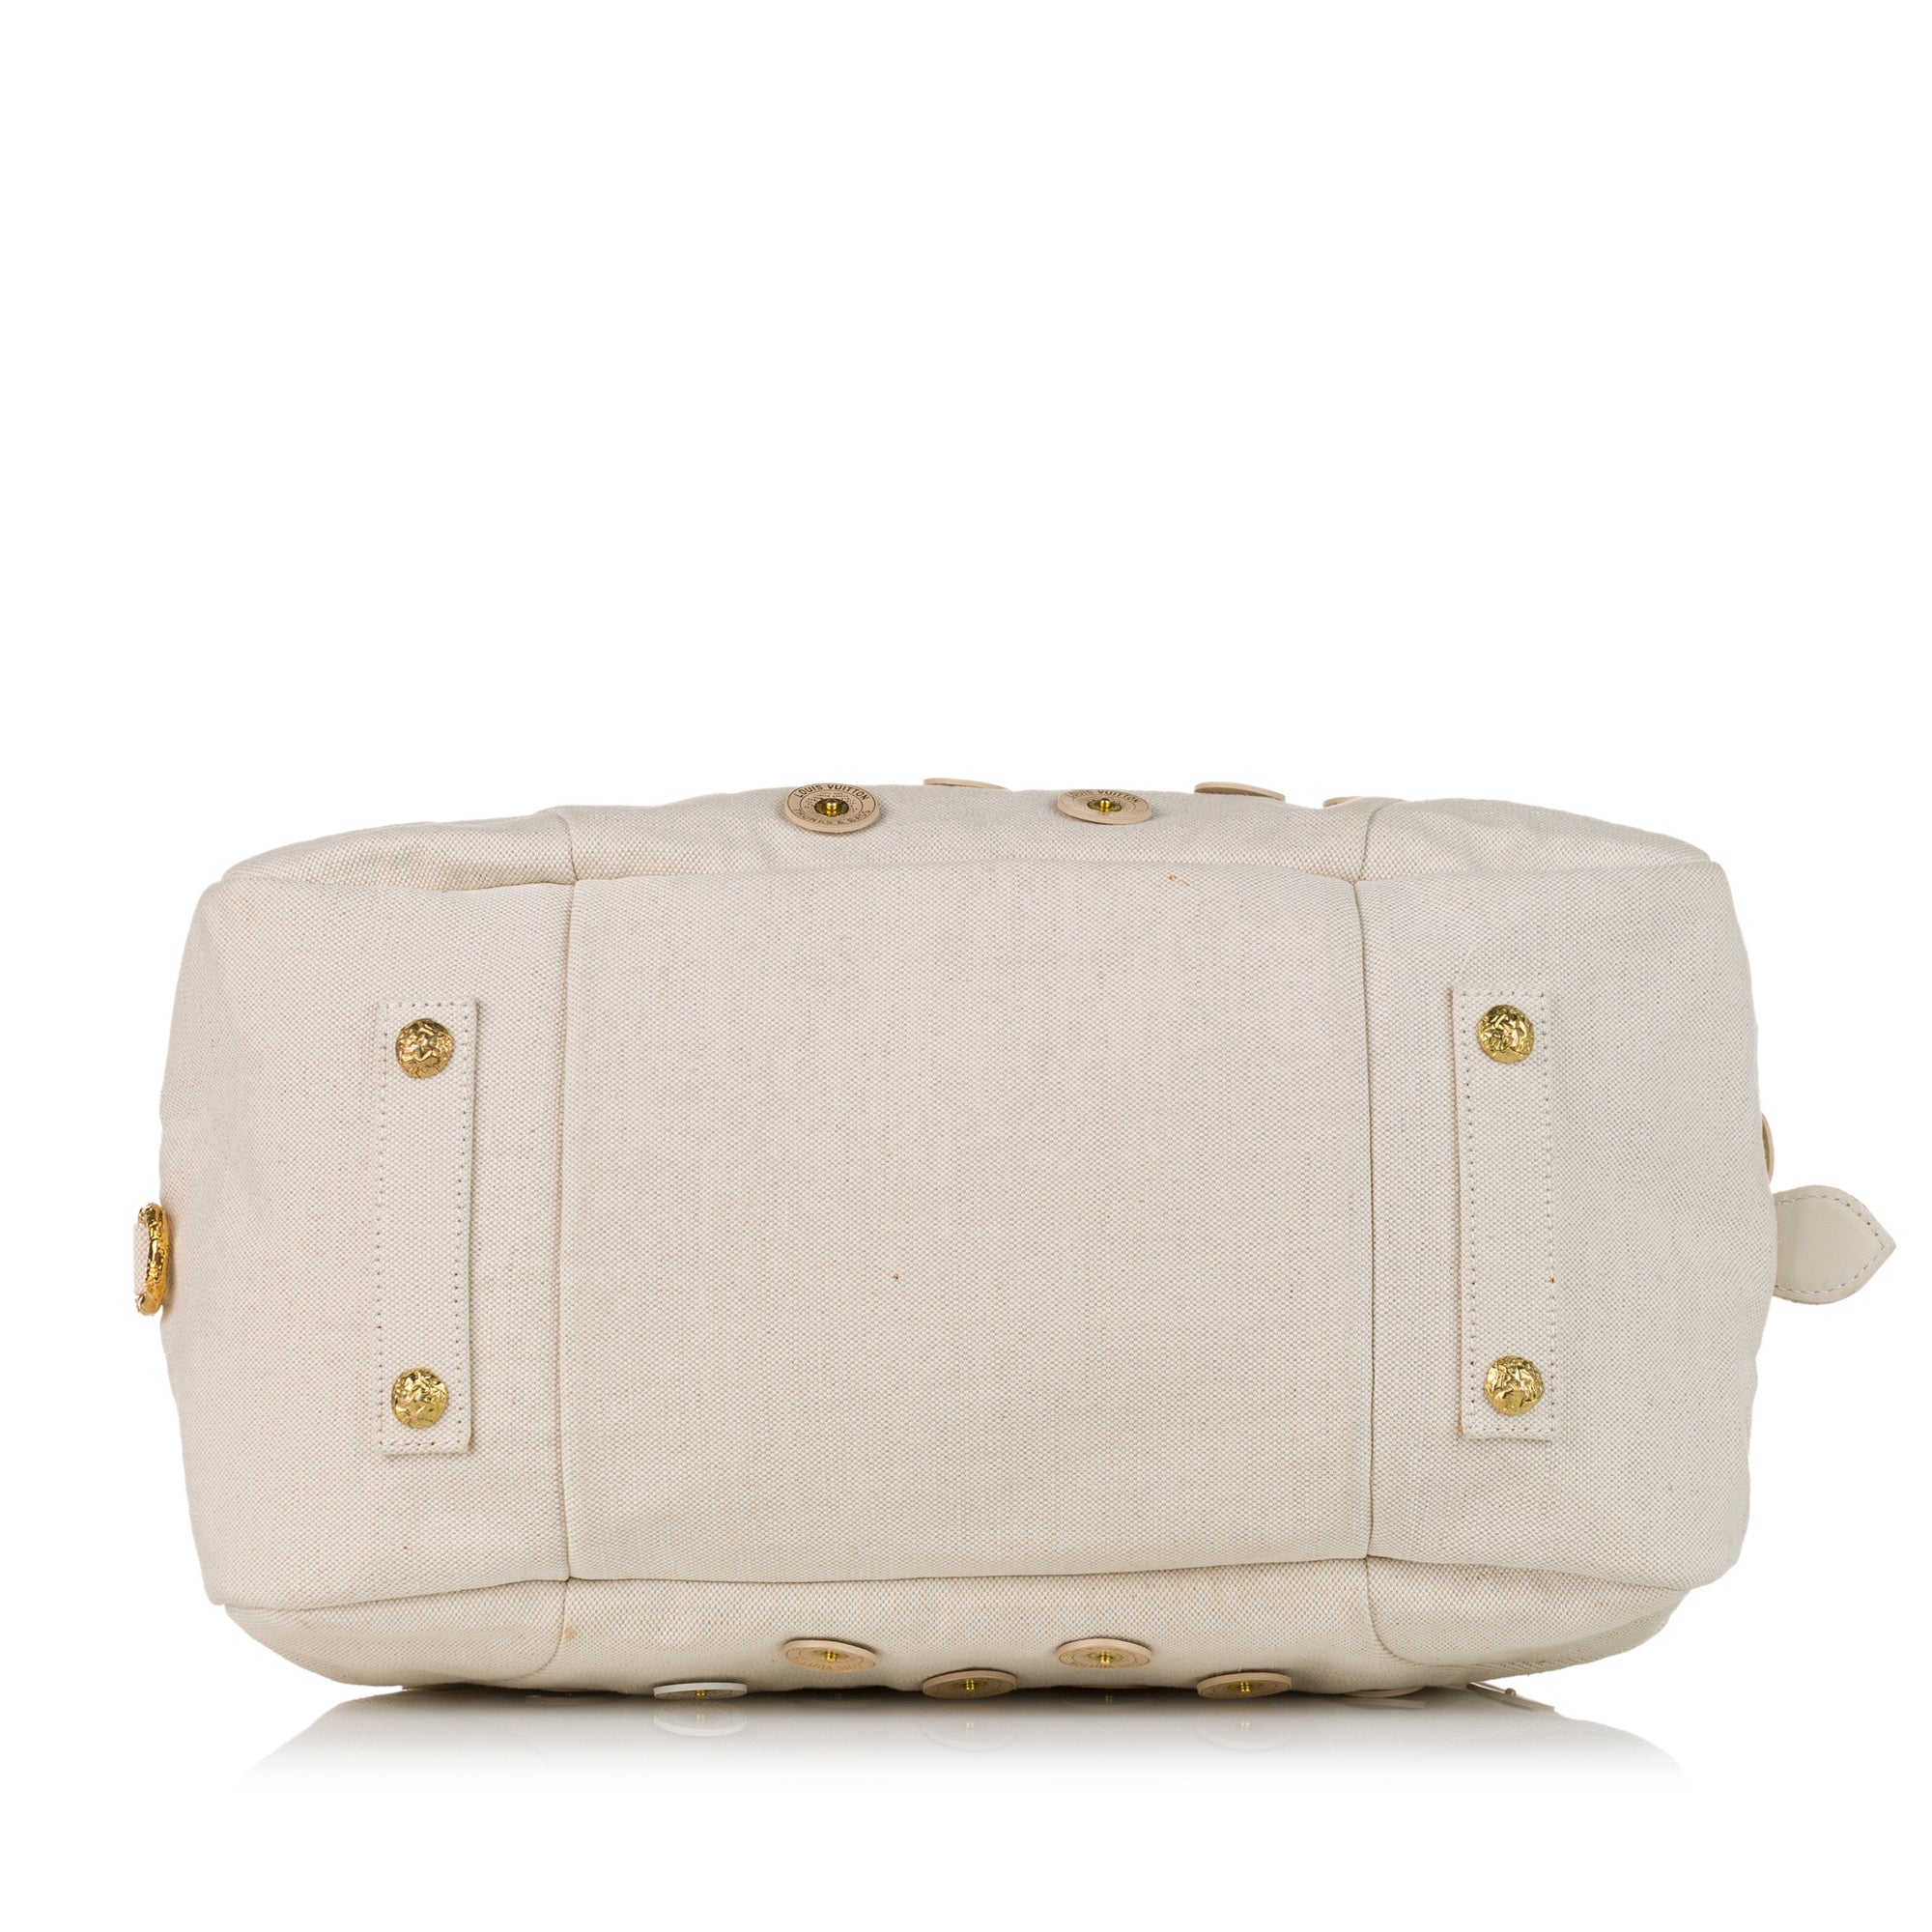 PRELOVED Louis Vuitton Polka Dots Panama Bowly Hand Bag MB1037